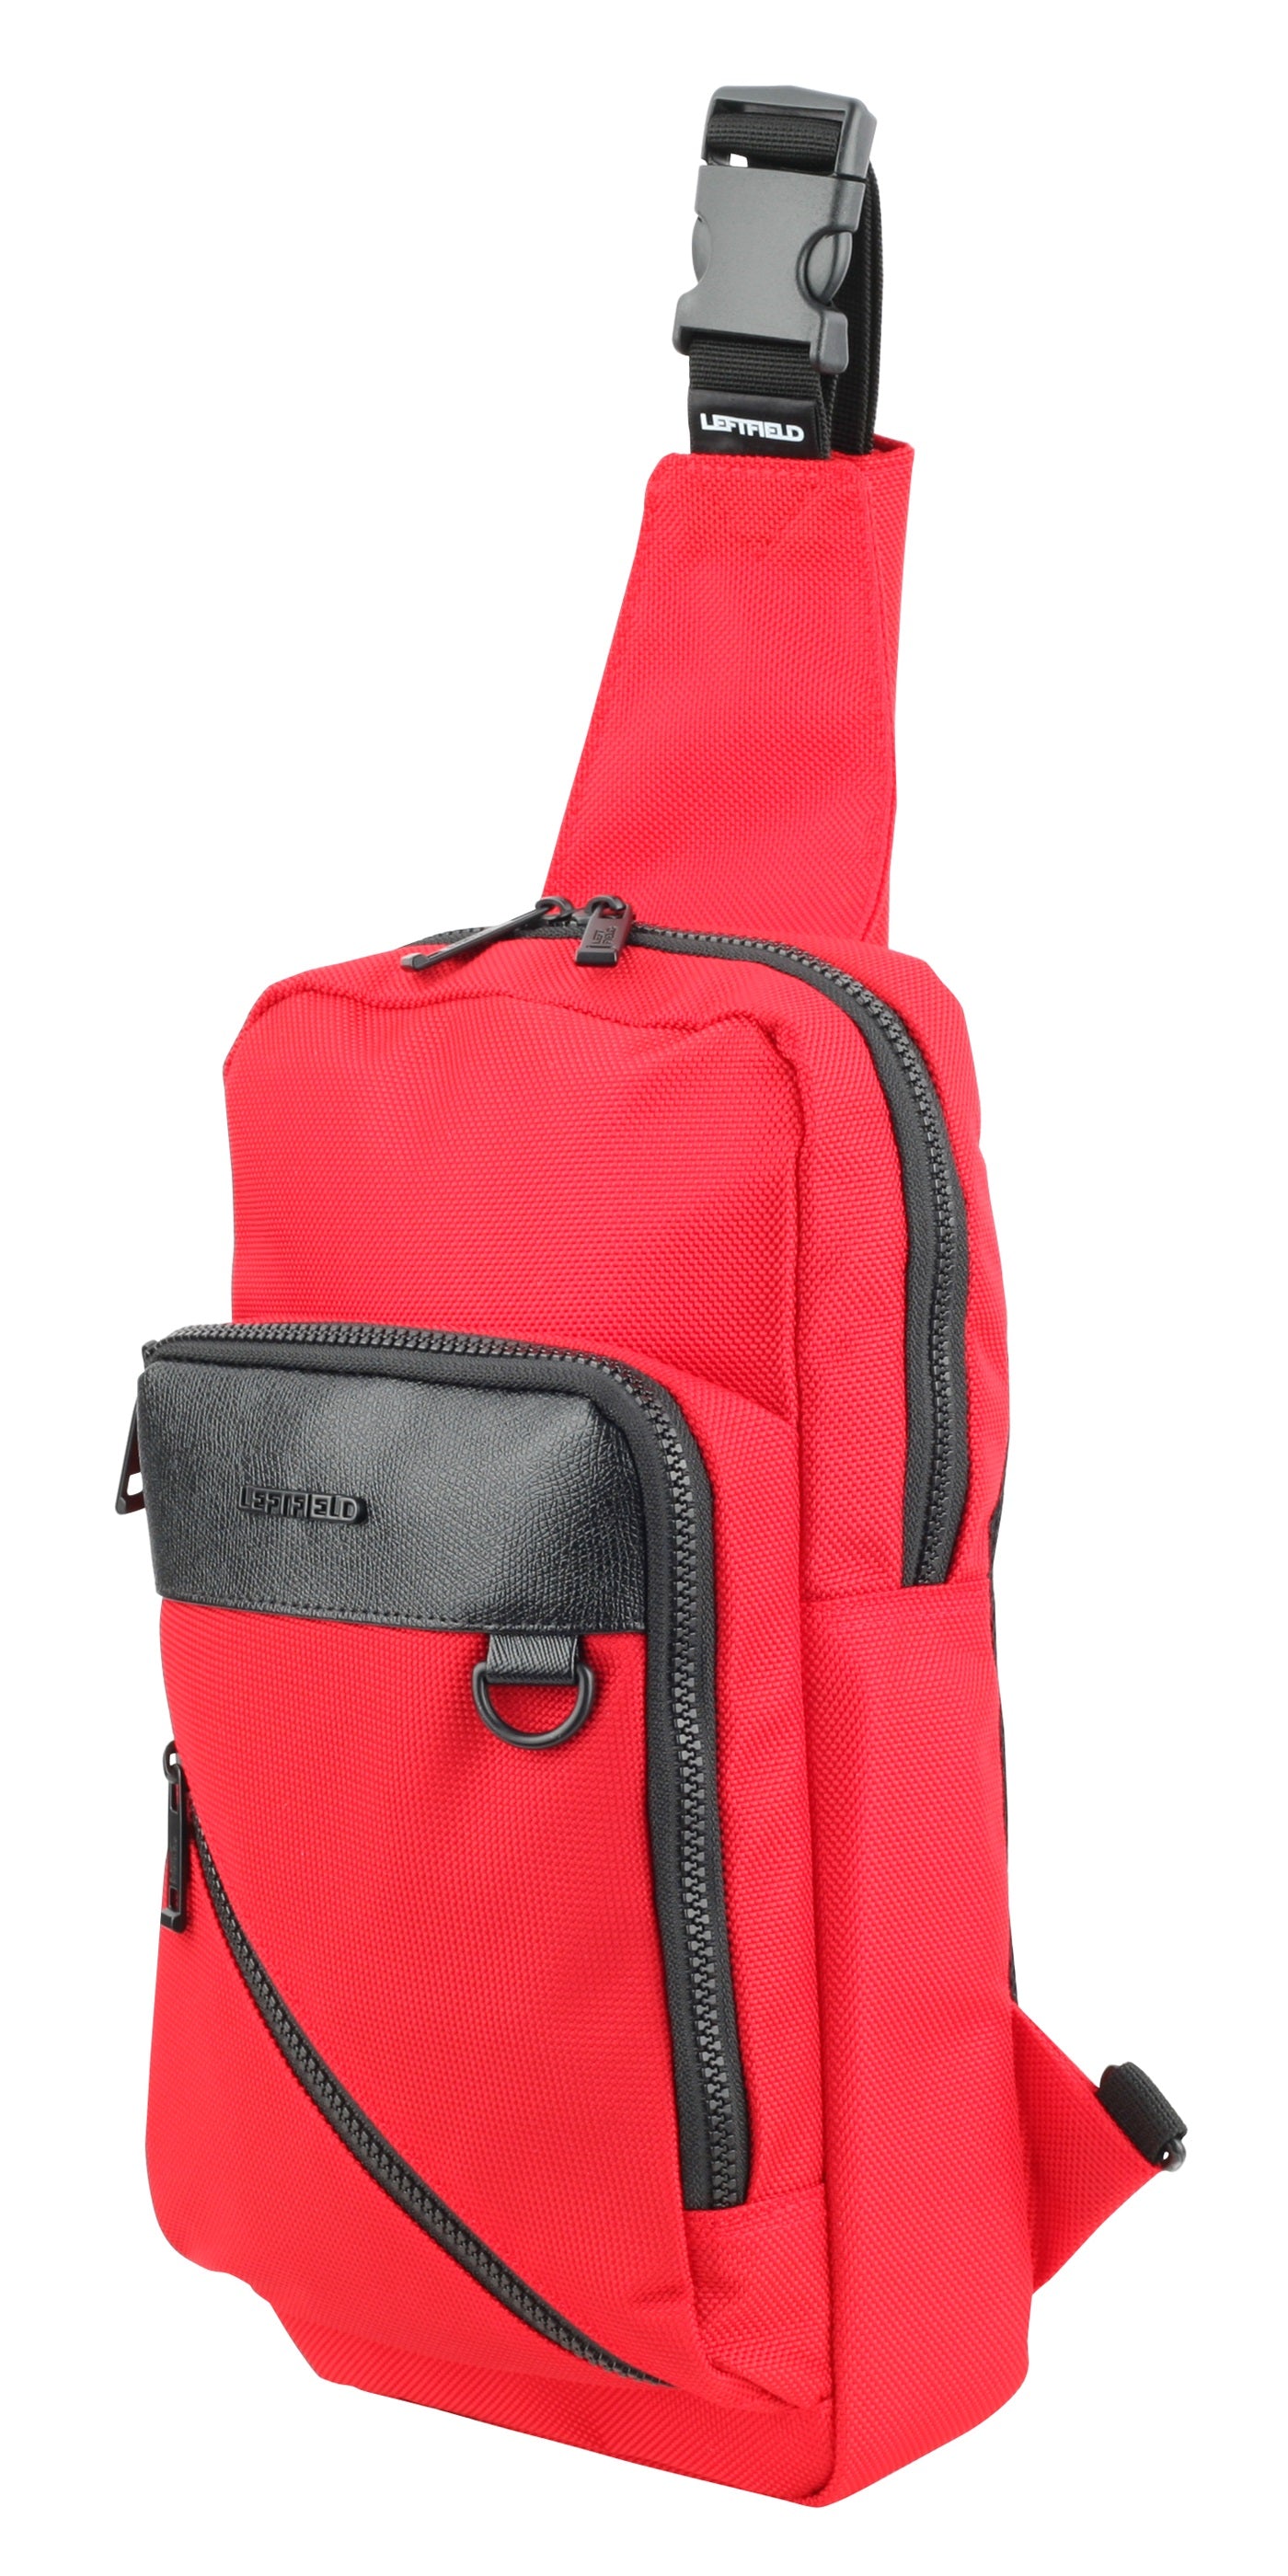 Red Sling Packs Messenger Bags